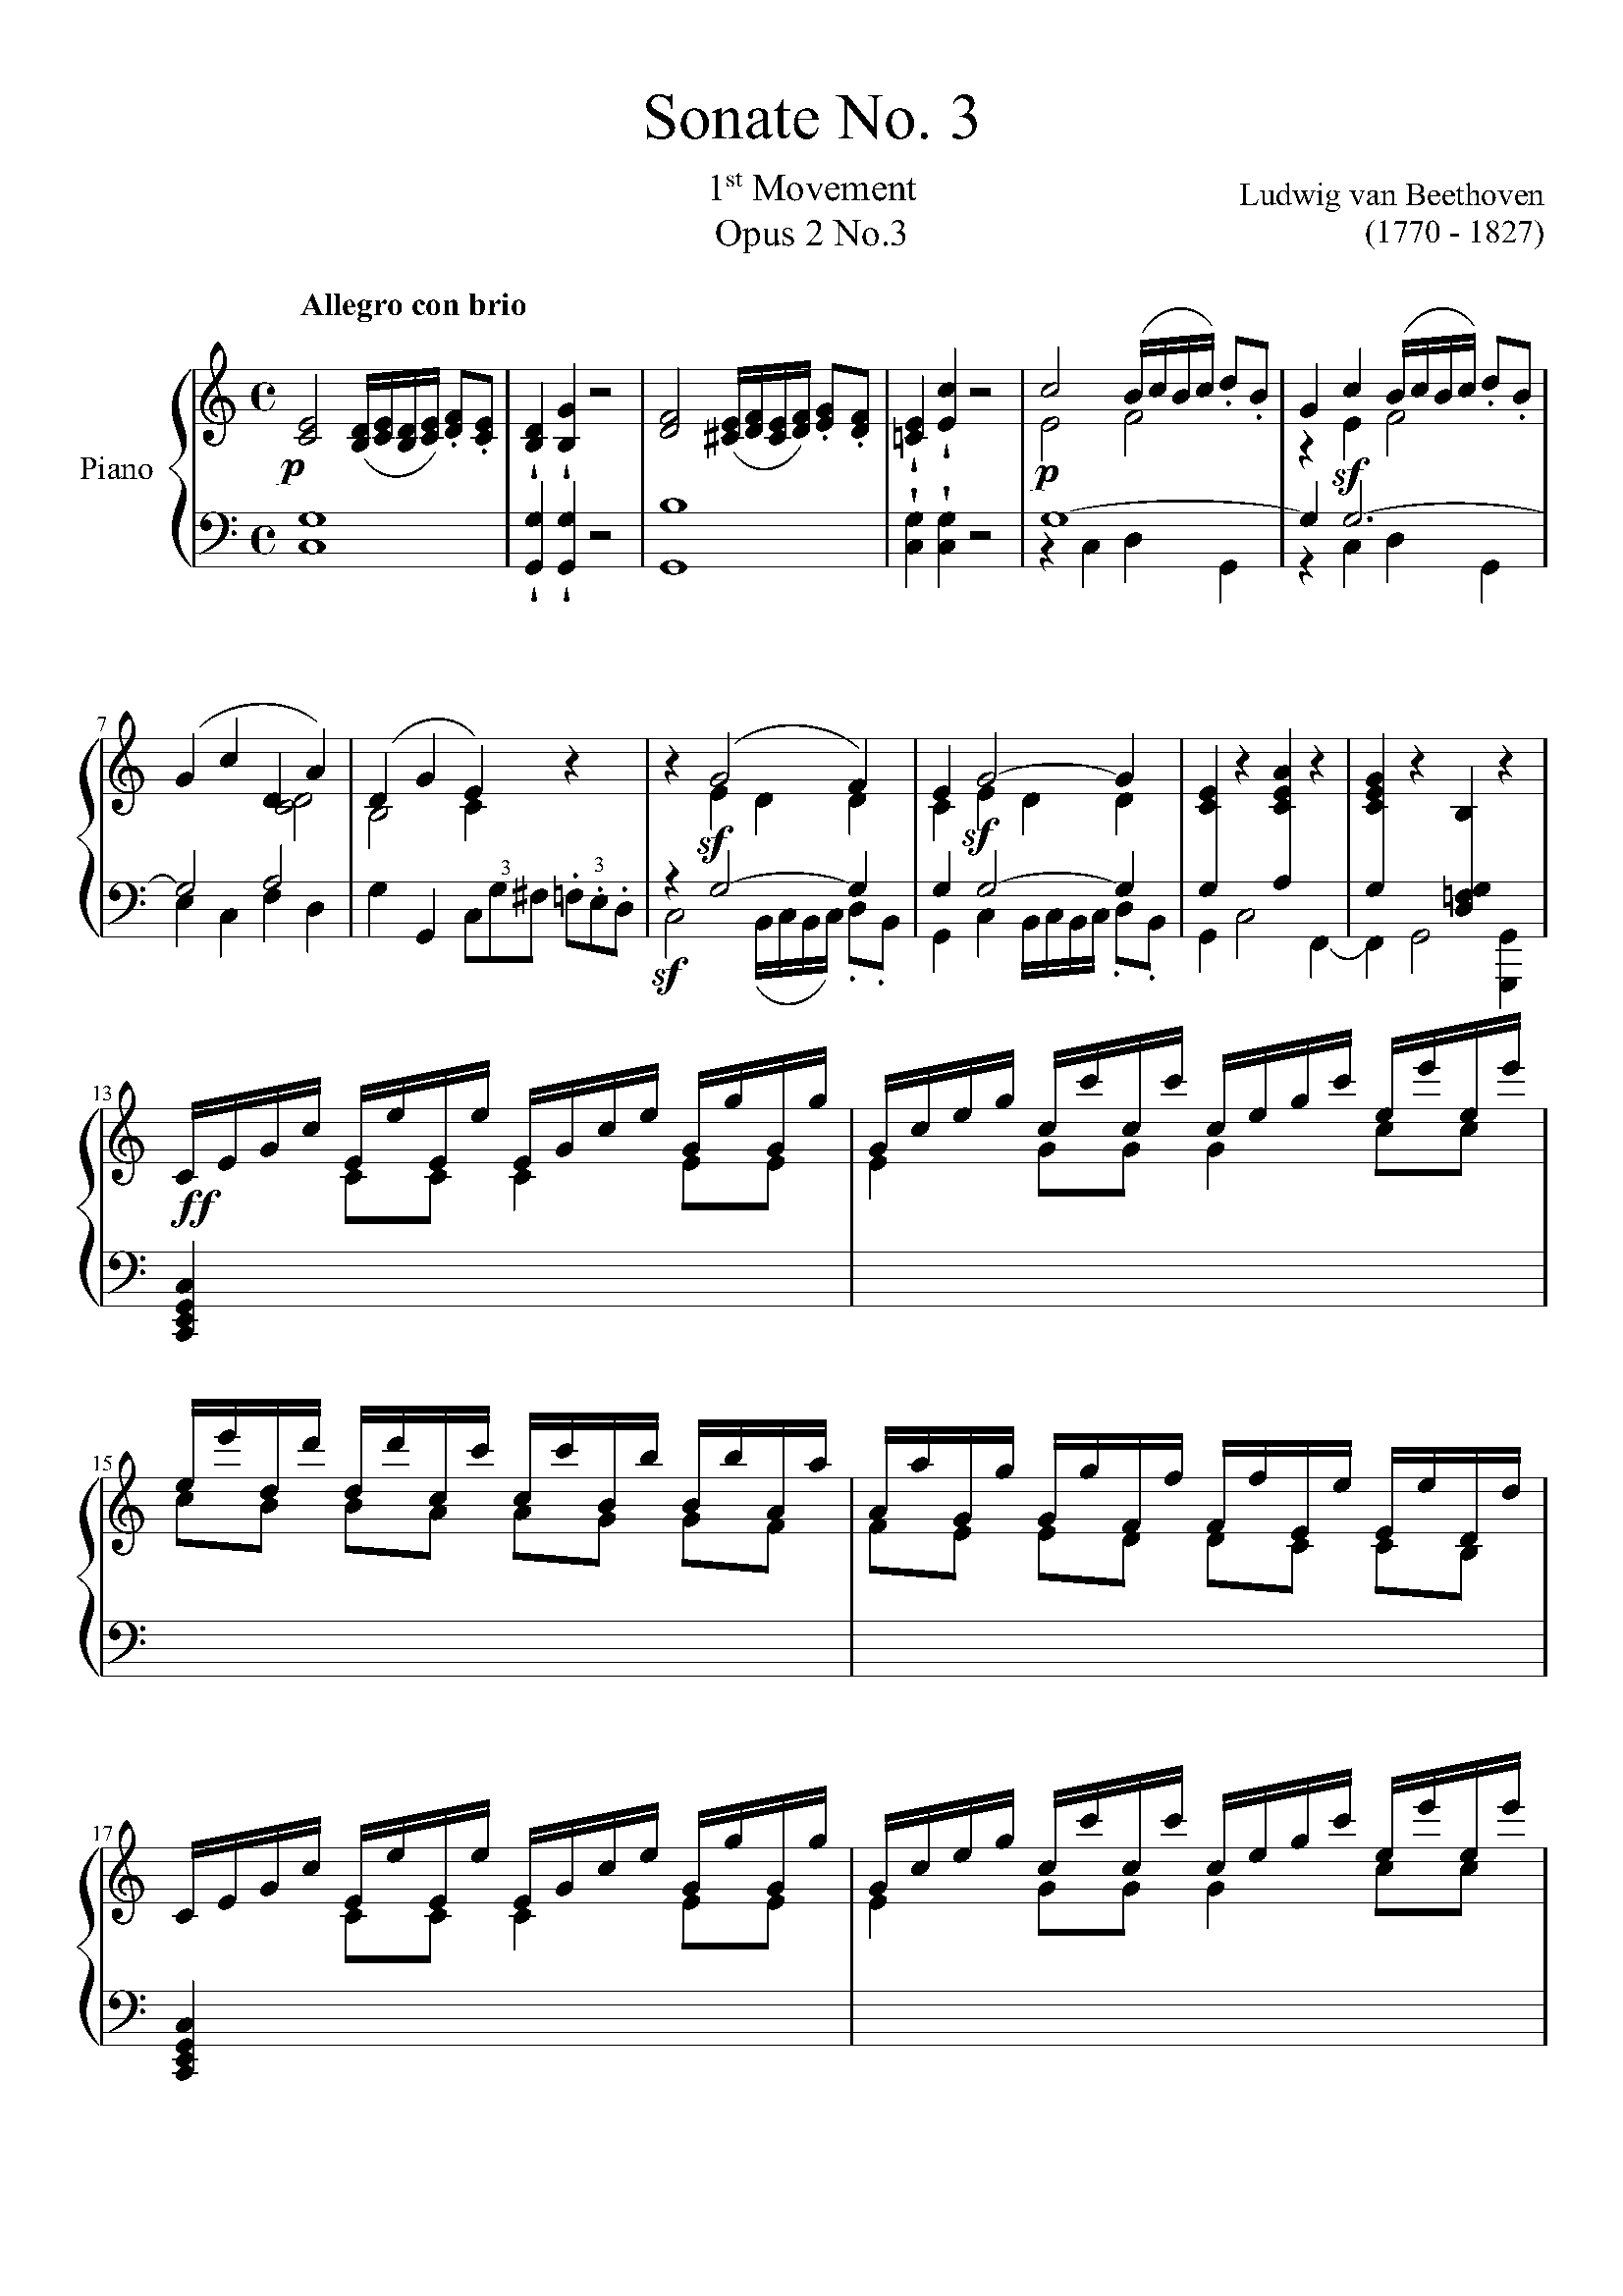 贝多芬钢琴奏鸣曲op14no1第二乐章曲式分析(贝多芬奏鸣曲op14no2第三乐章曲式分析)